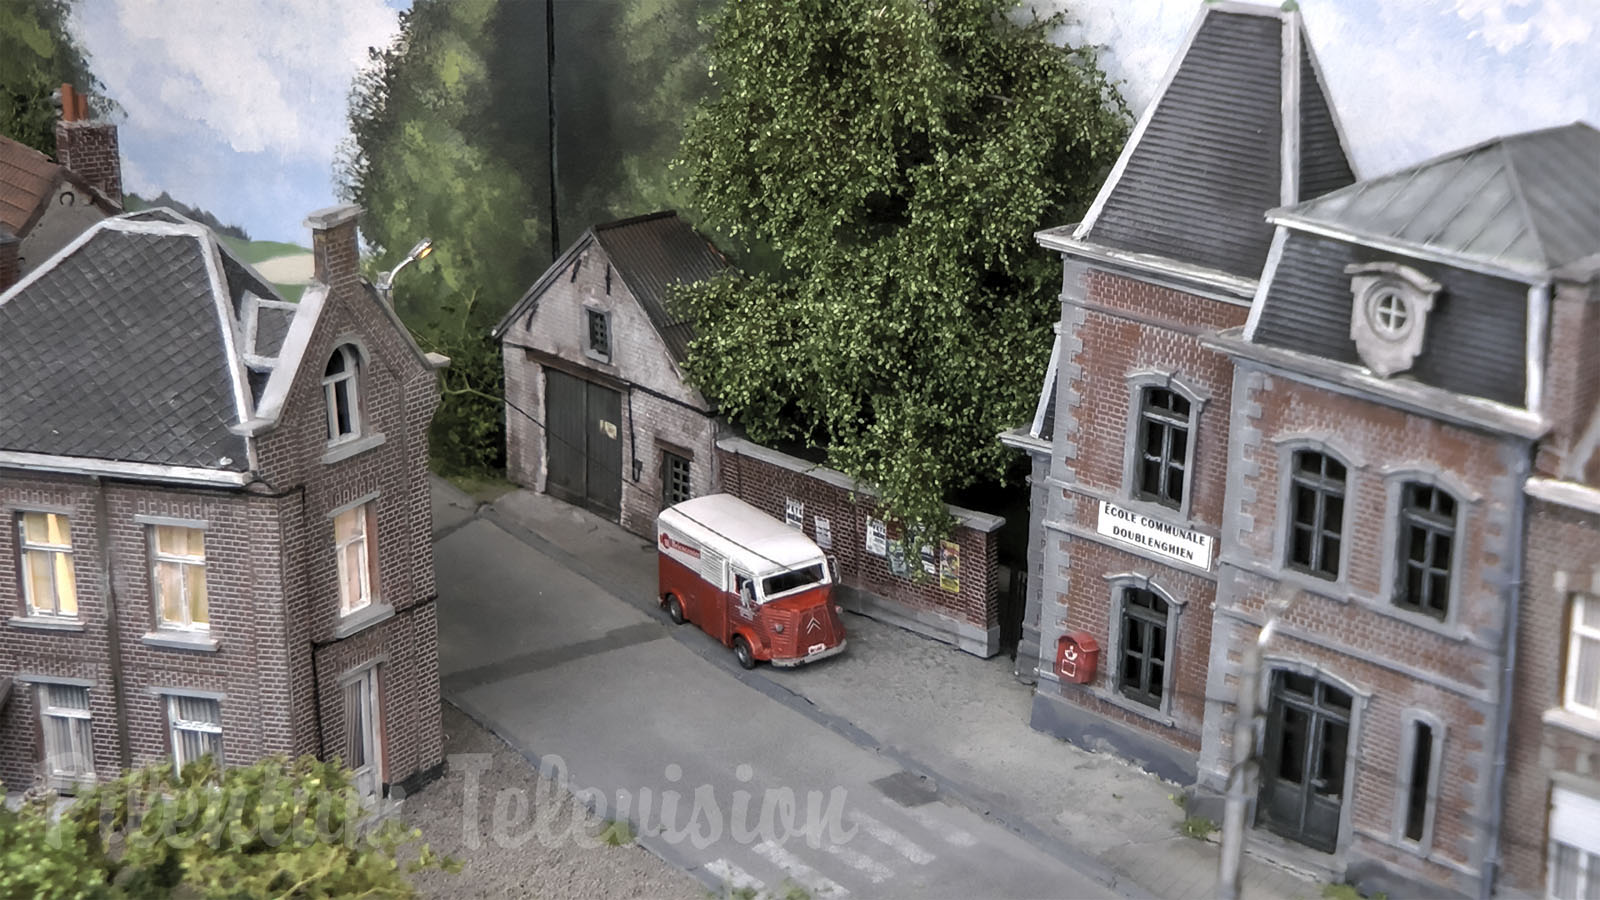 Maquette de trains miniatures à l’échelle HO de la Belgique - Diorama Doublenghien de Alan Jockmans